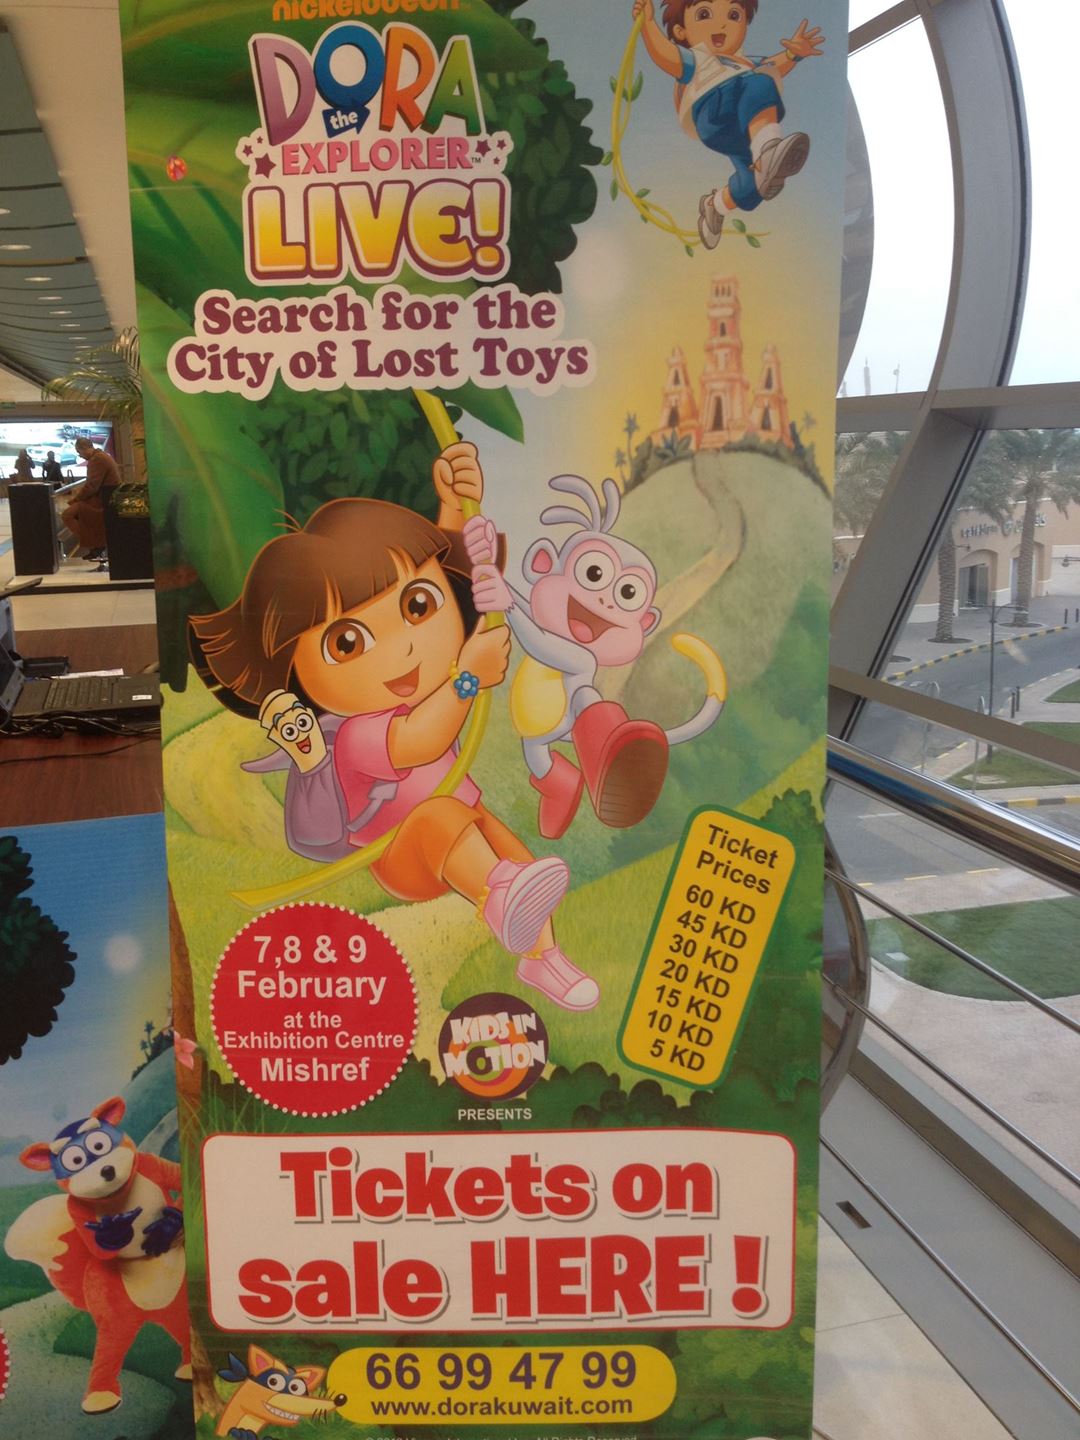 Dora in Kuwait this weekend!